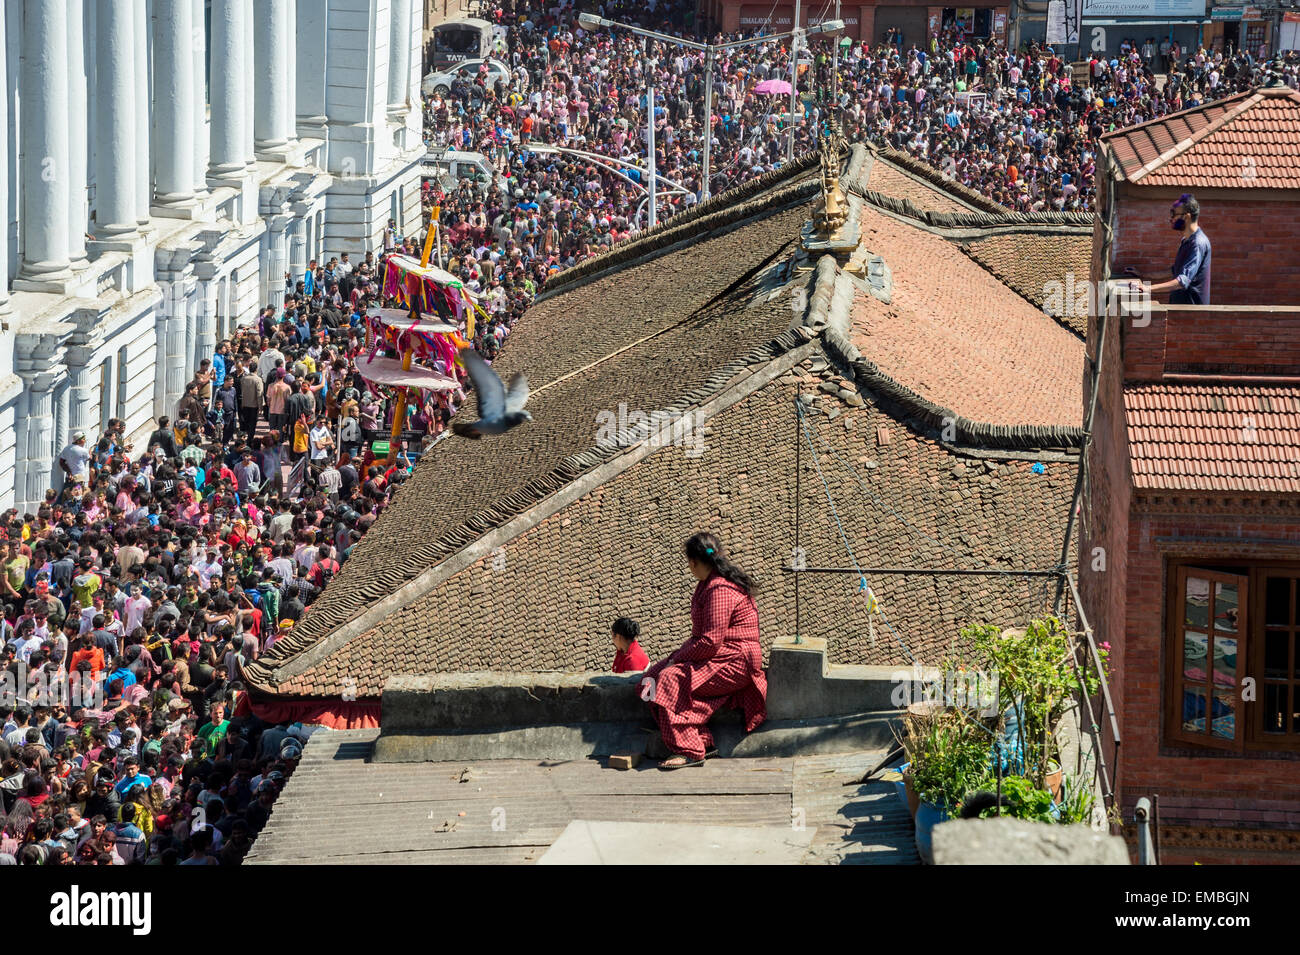 Personnes sur un toit, sur la foule cherche container alsace voire lorraine rassemblement à durbar square au cours du festival holi Banque D'Images